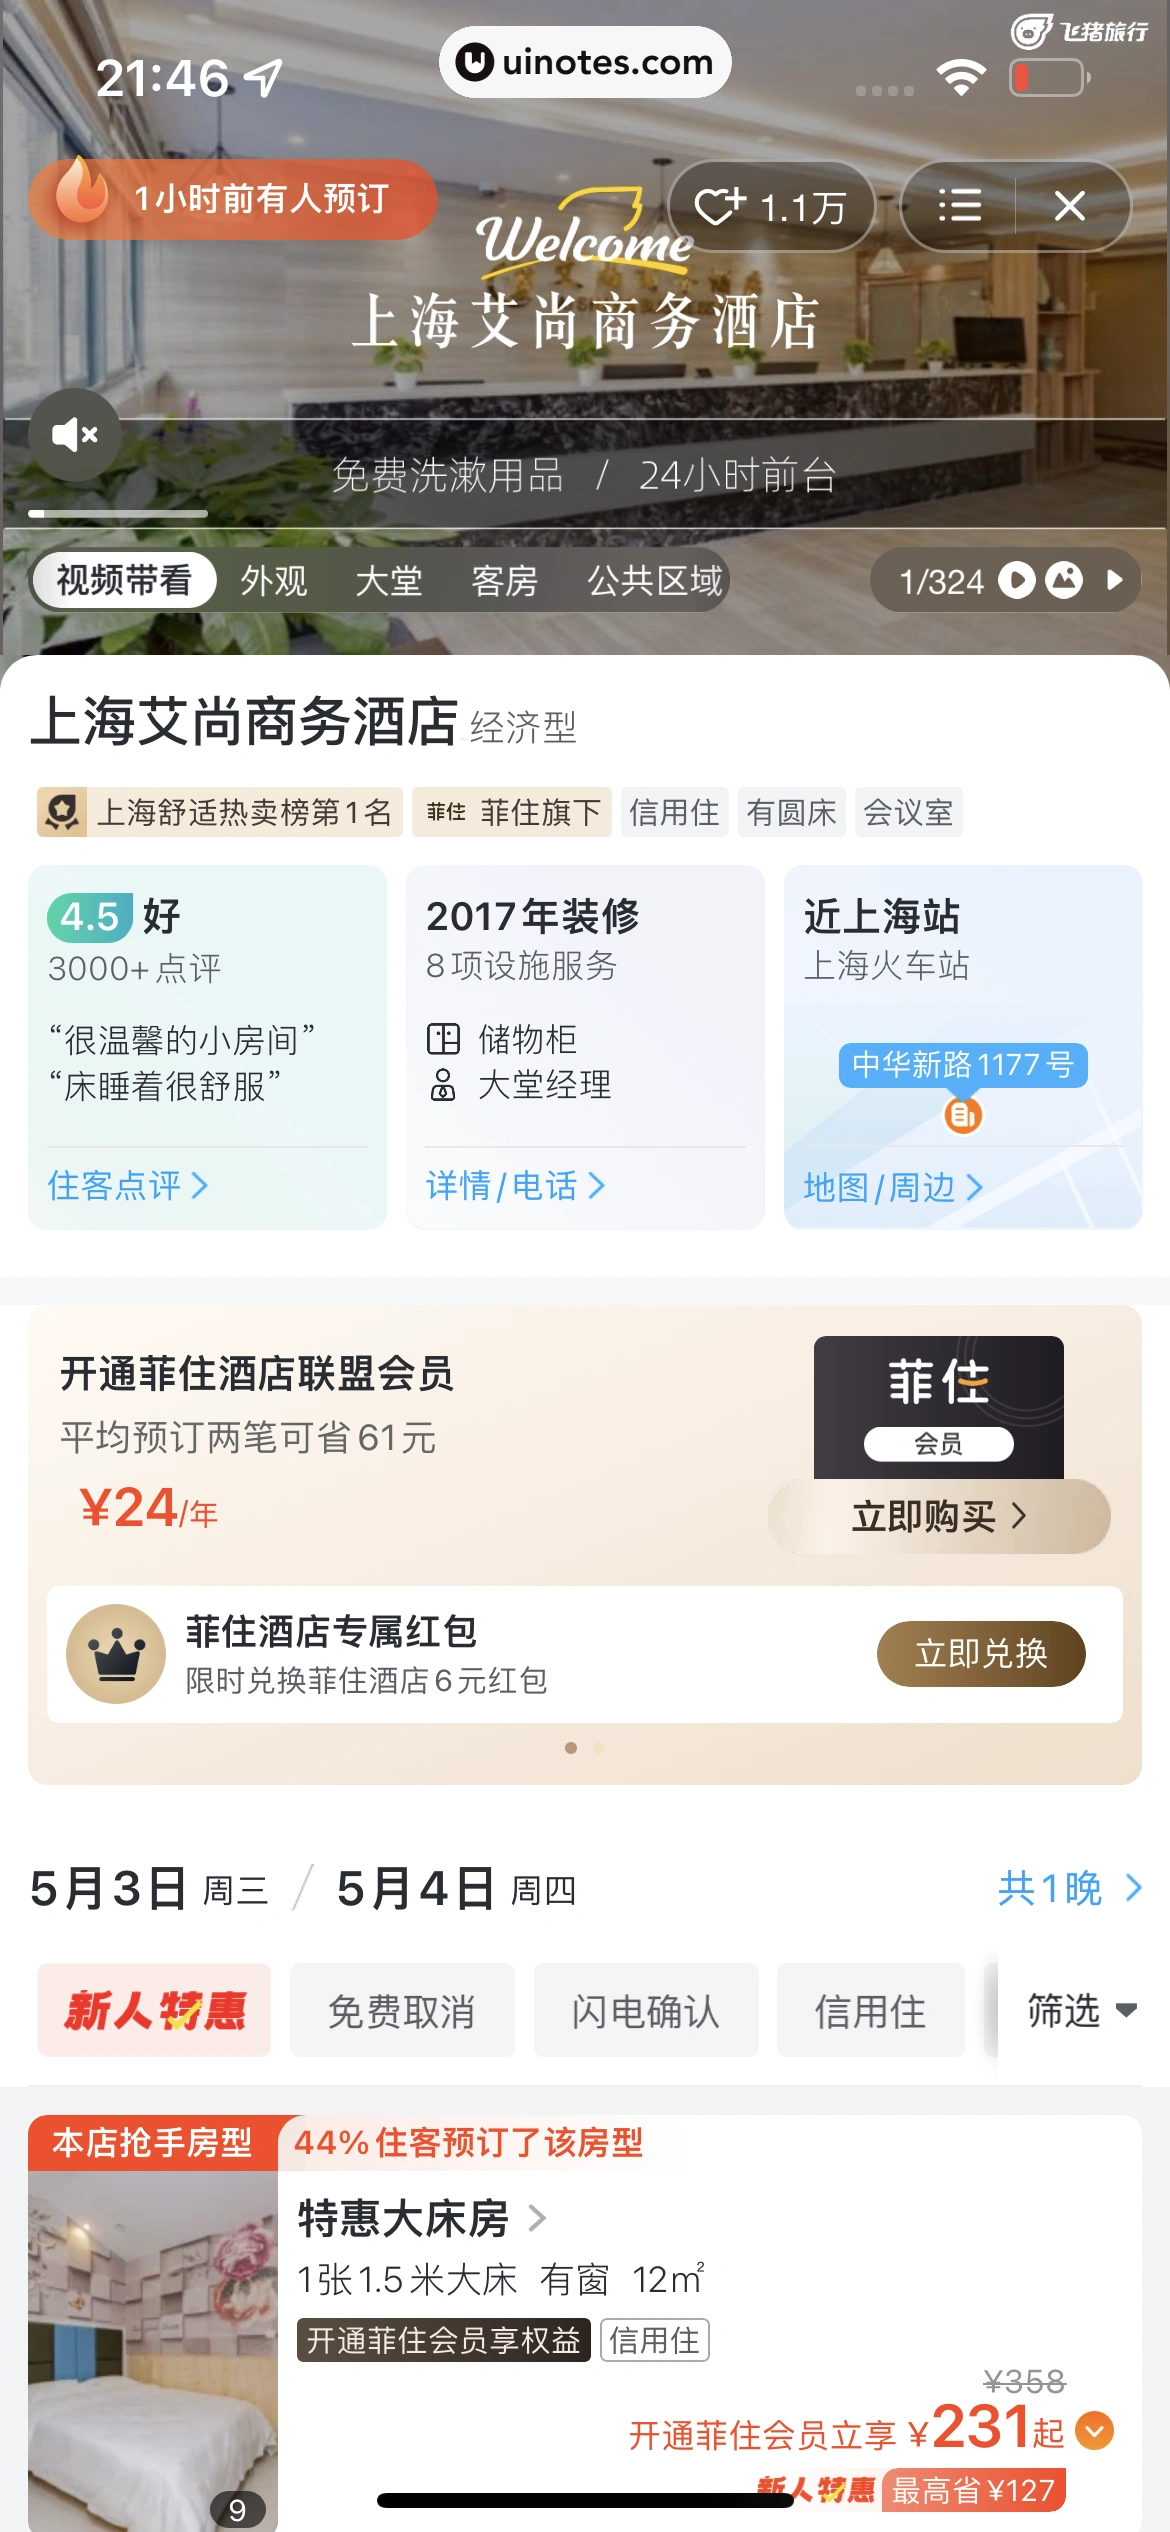 飞猪旅行 App 截图 253 - UI Notes